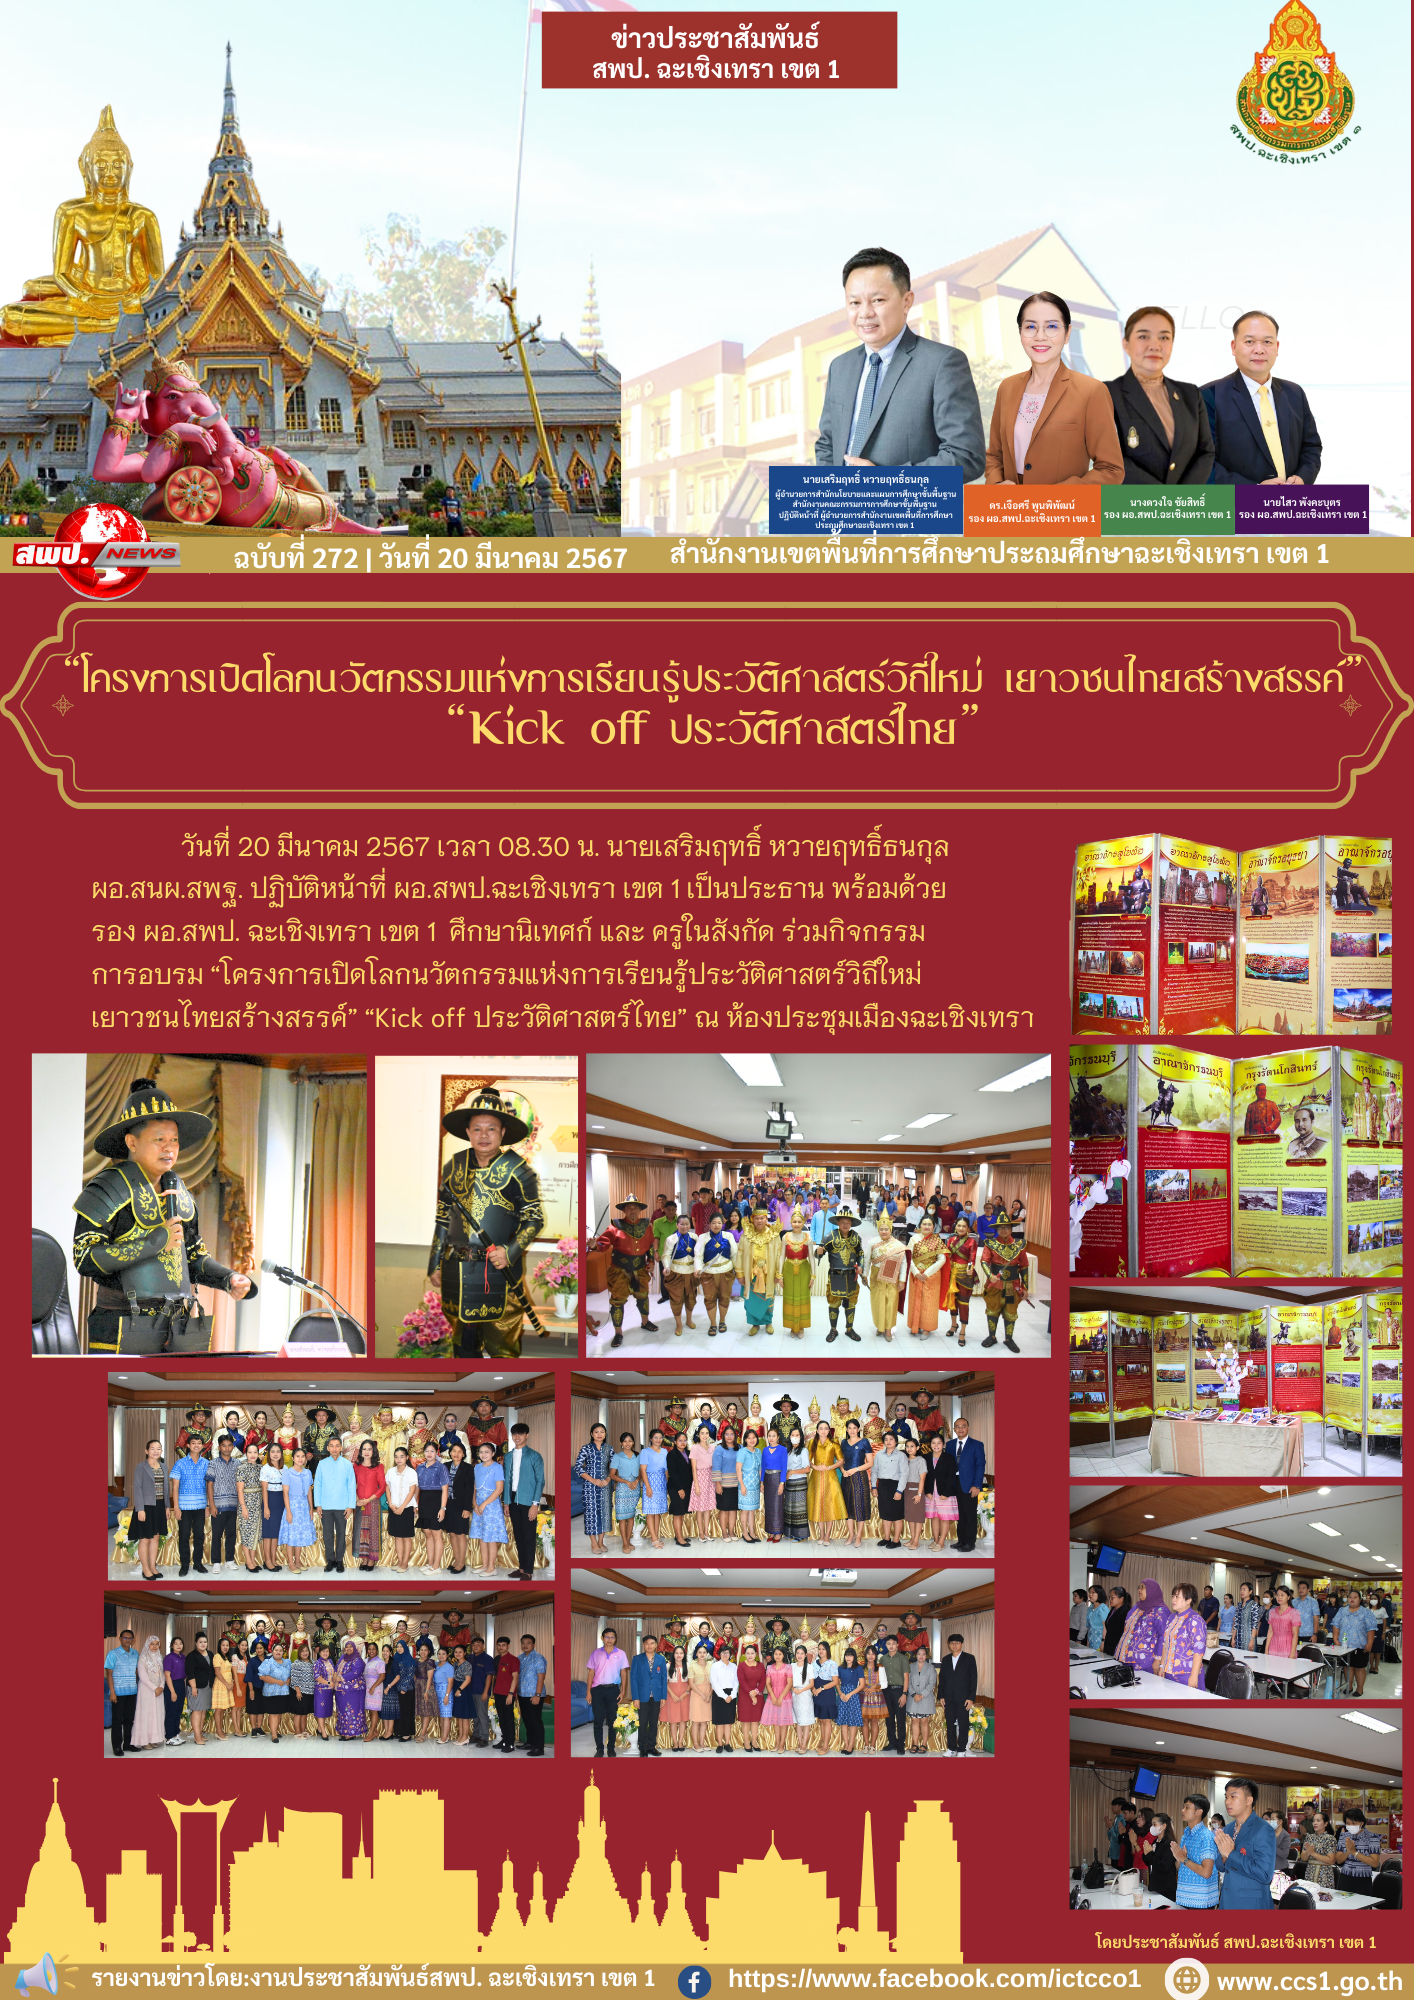 ร่วมกิจกรรม อบรม “โครงการเปิดโลกนวัตกรรมแห่งการเรียนรู้ประวัติศาสตร์วิถีใหม่ เยาวชนไทยสร้างสรรค์” “Kick off ประวัติศาสตร์ไทย” 